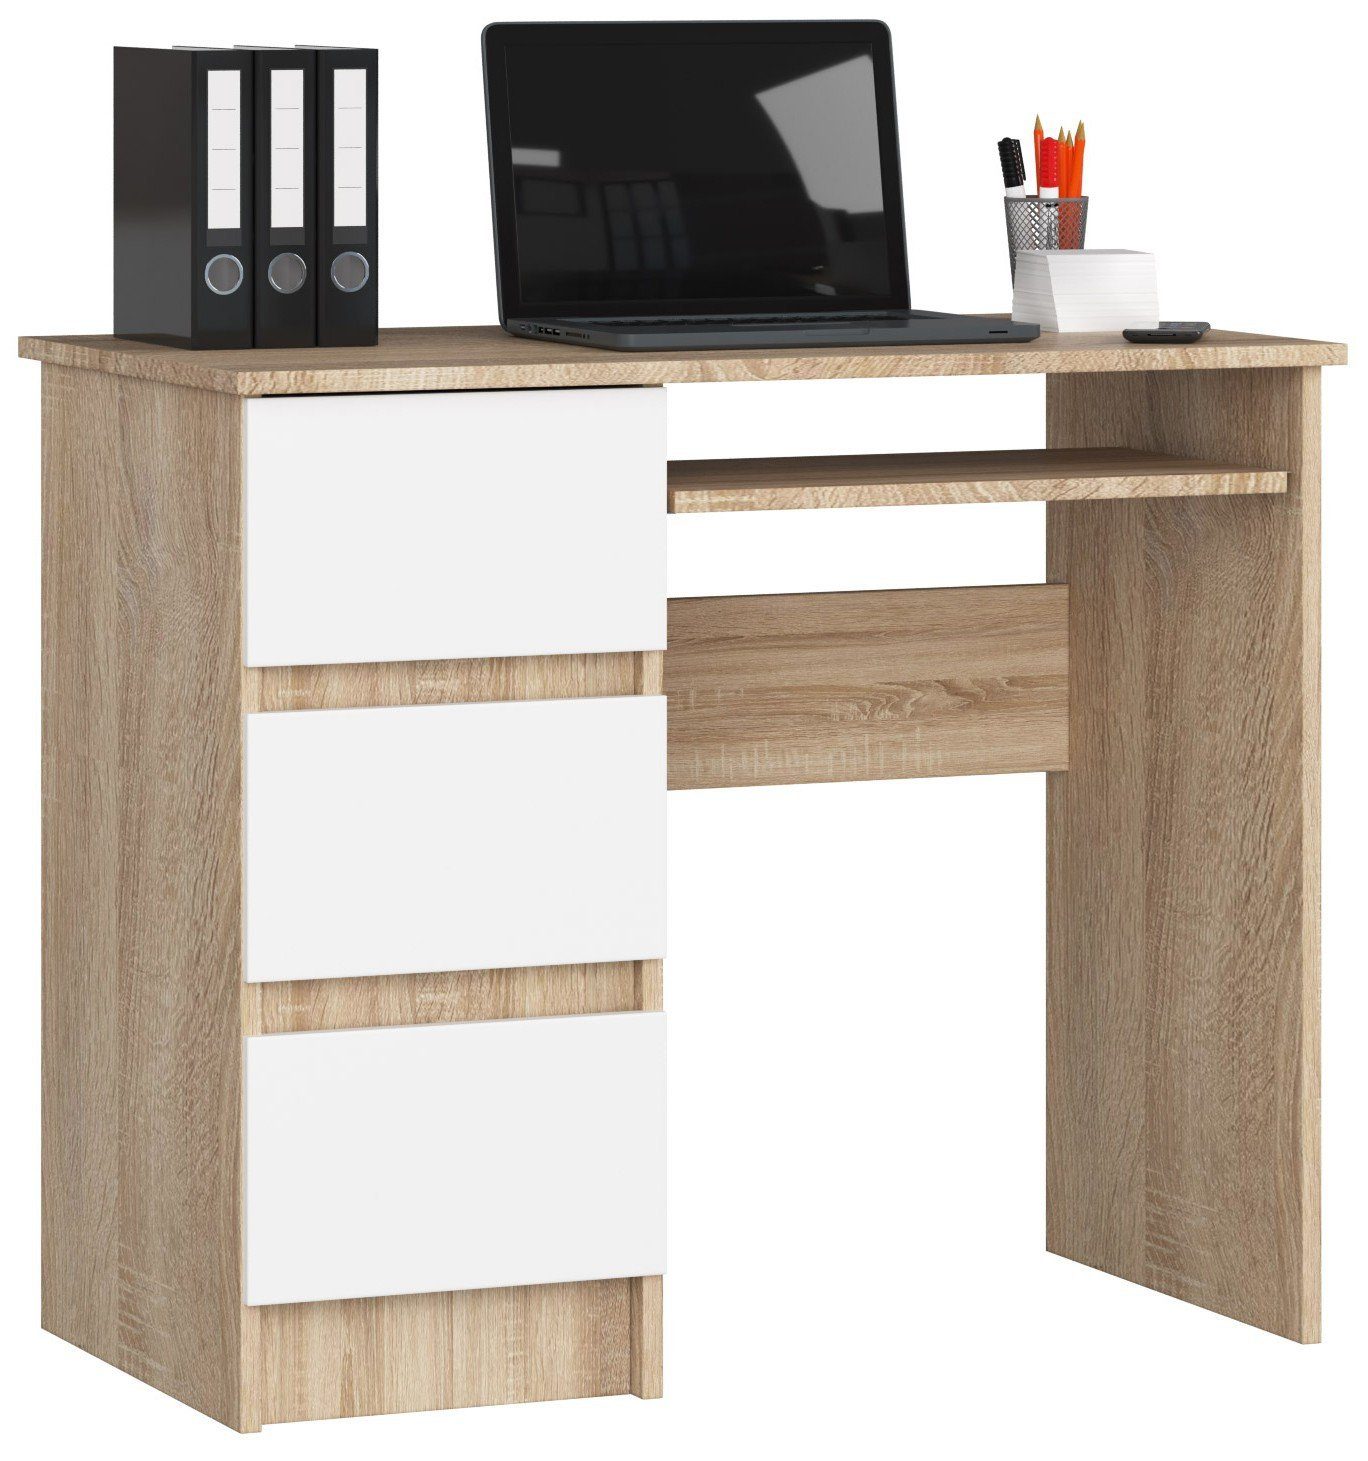 Home Collective Computertisch Bürotisch, 90 x 50 x 77 cm, abriebfeste Laminatplatte mit ABS-Kante, 3 Schubladen, ausziehbarer Tastaturablage, 16 mm dicke, sonoma weiß